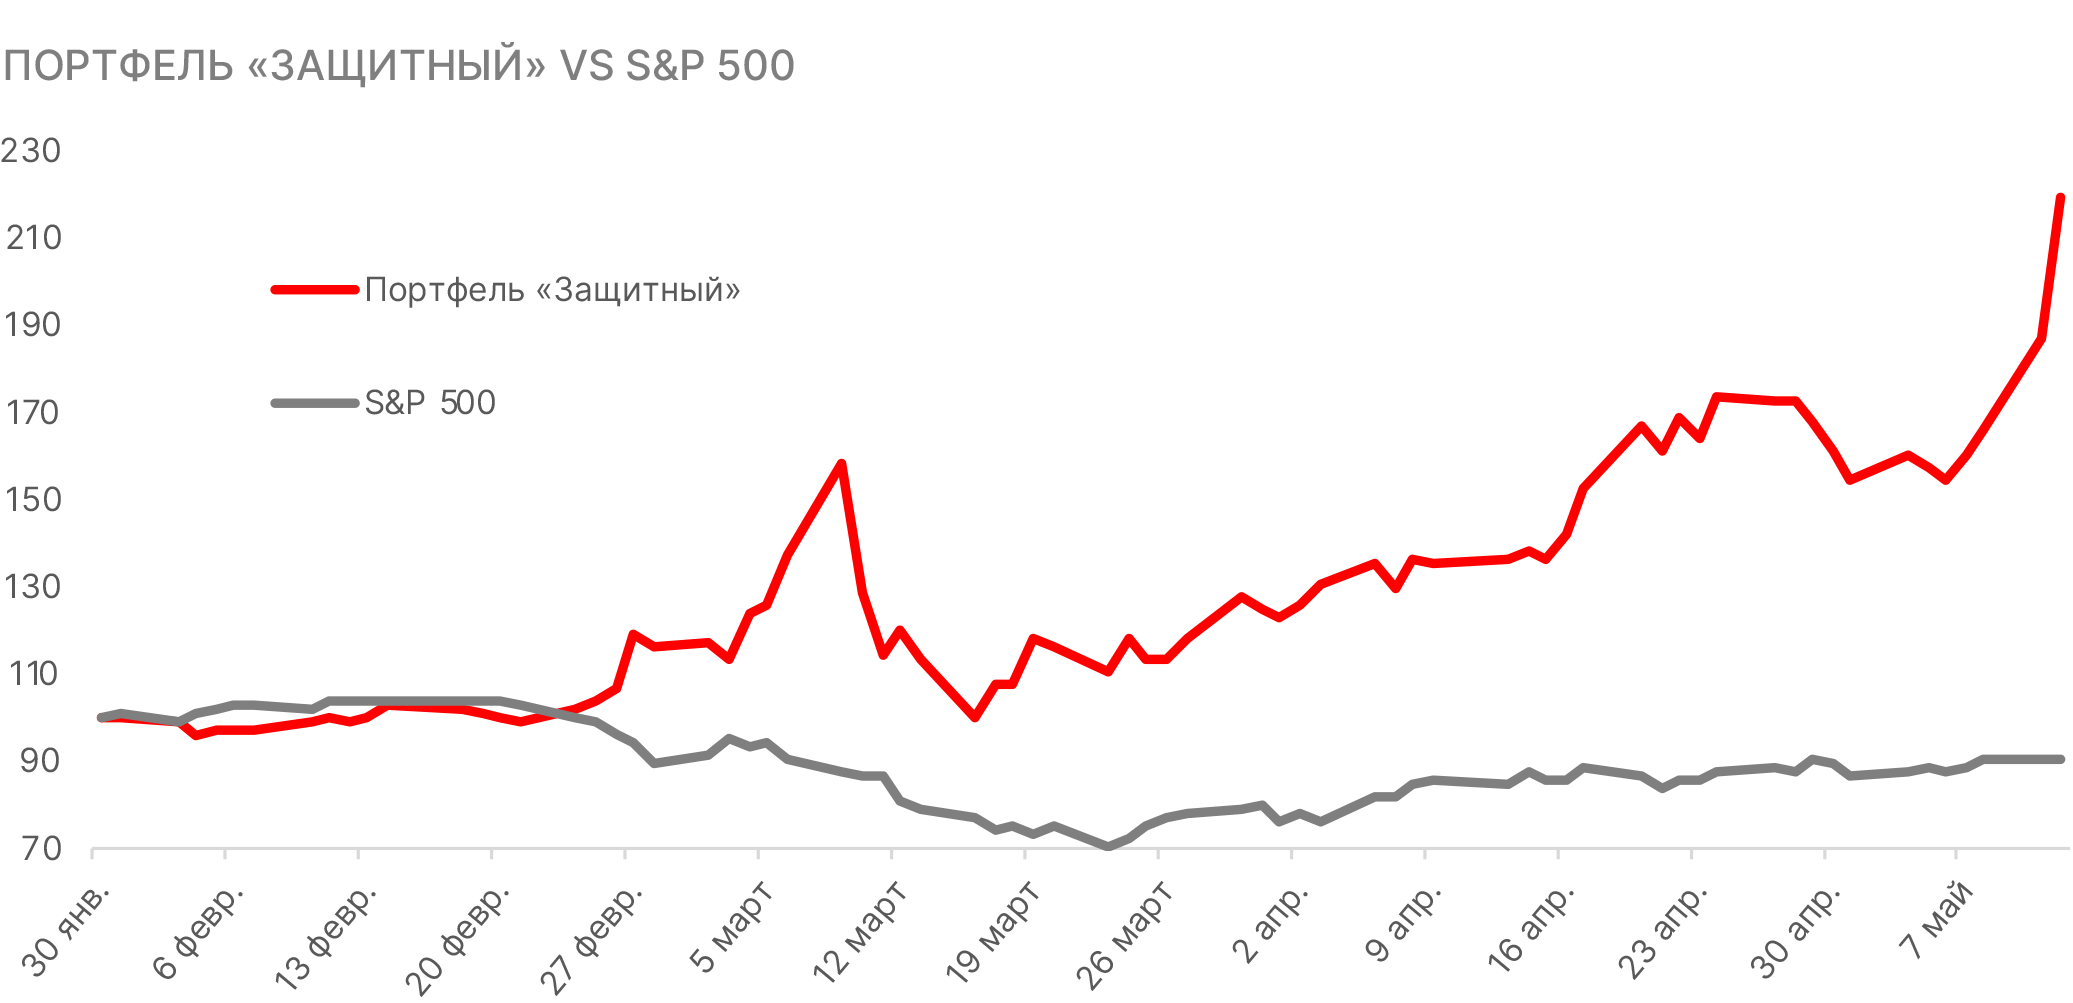 Динамика защитного портфеля и S&P 500